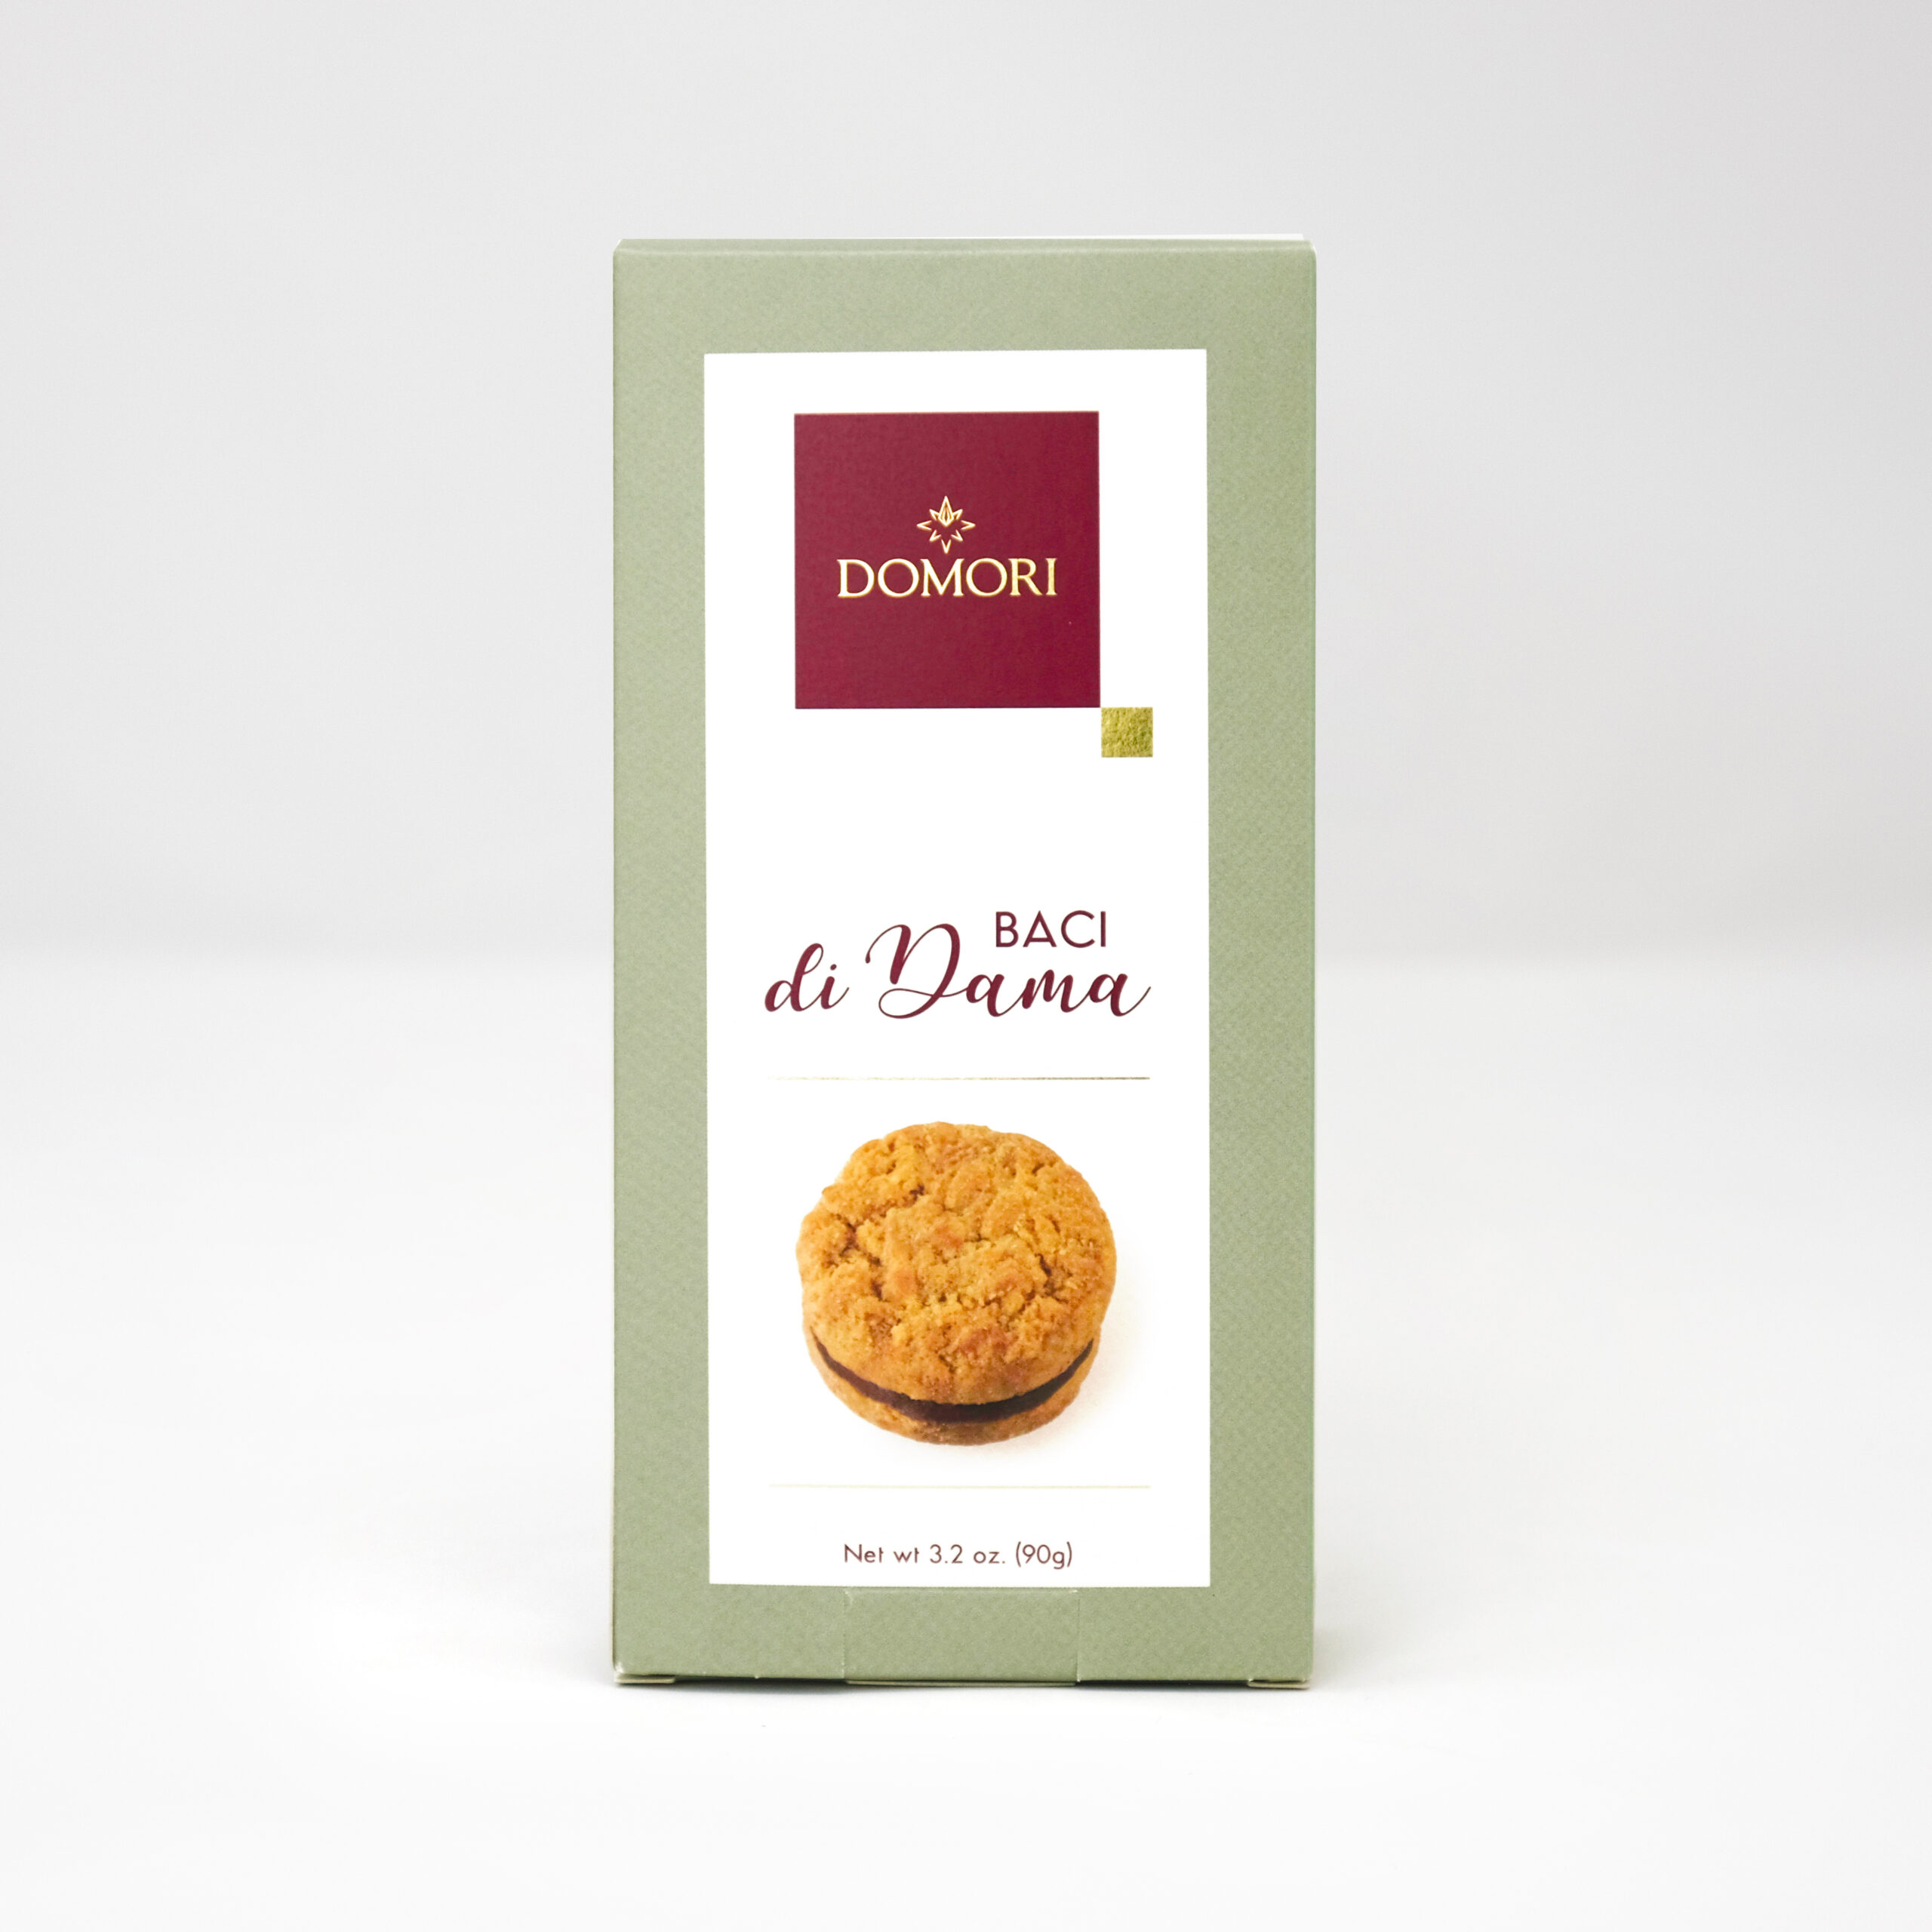 Domori Baci di Dama shortcrust pastry biscuits gr 90